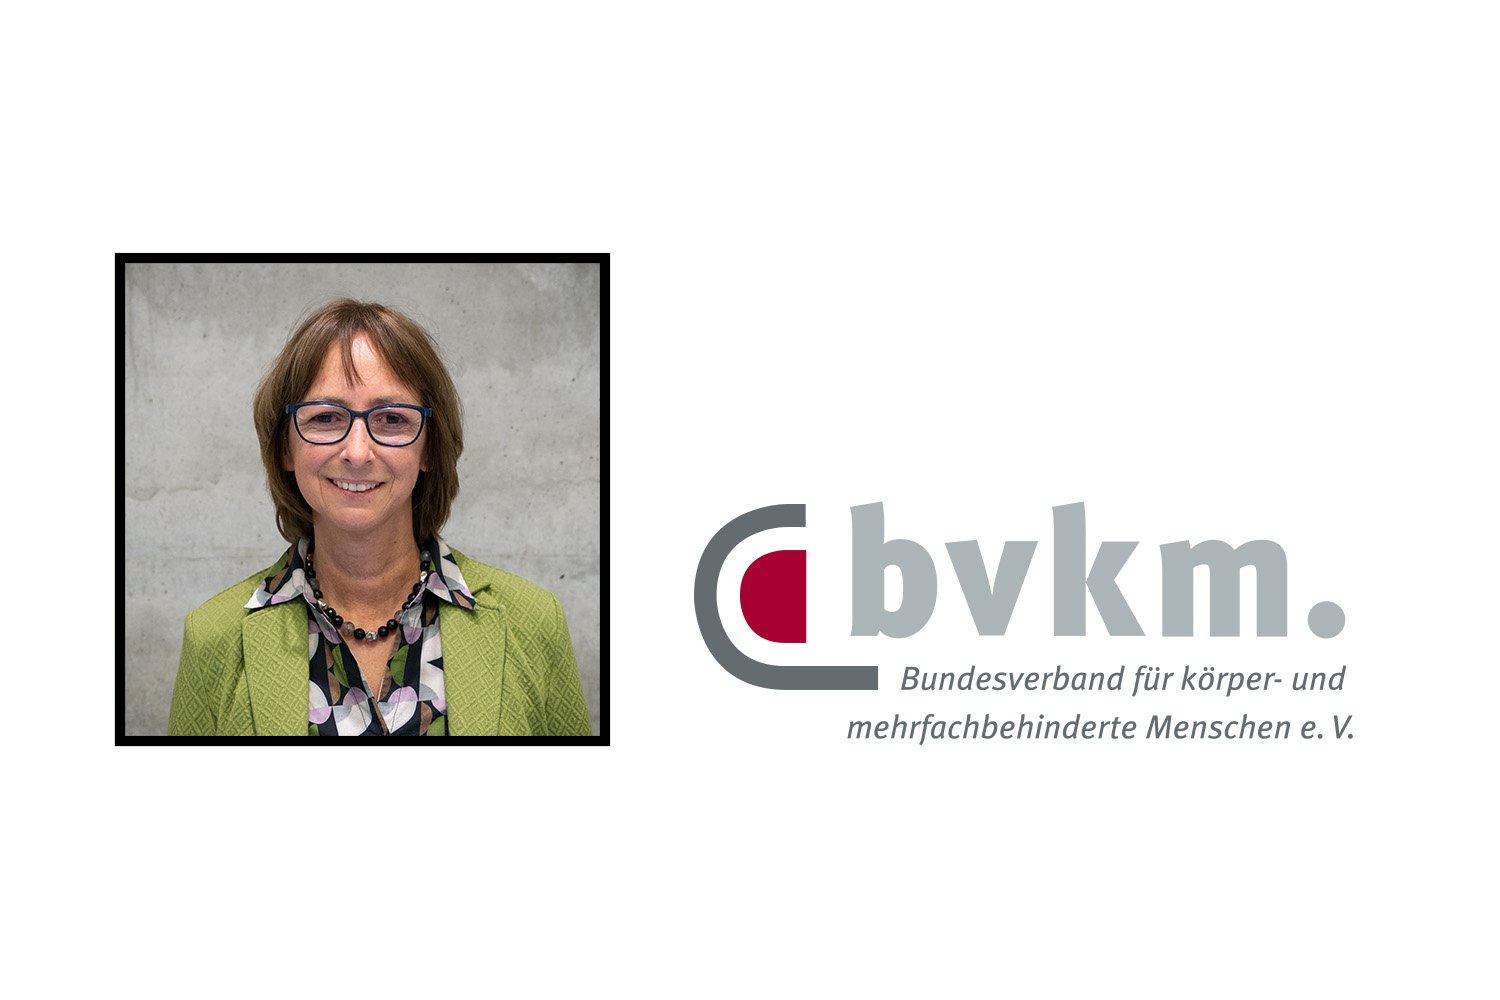 Ein Bild von Beate Bettenhausen, daneben das Logo des bvkm.